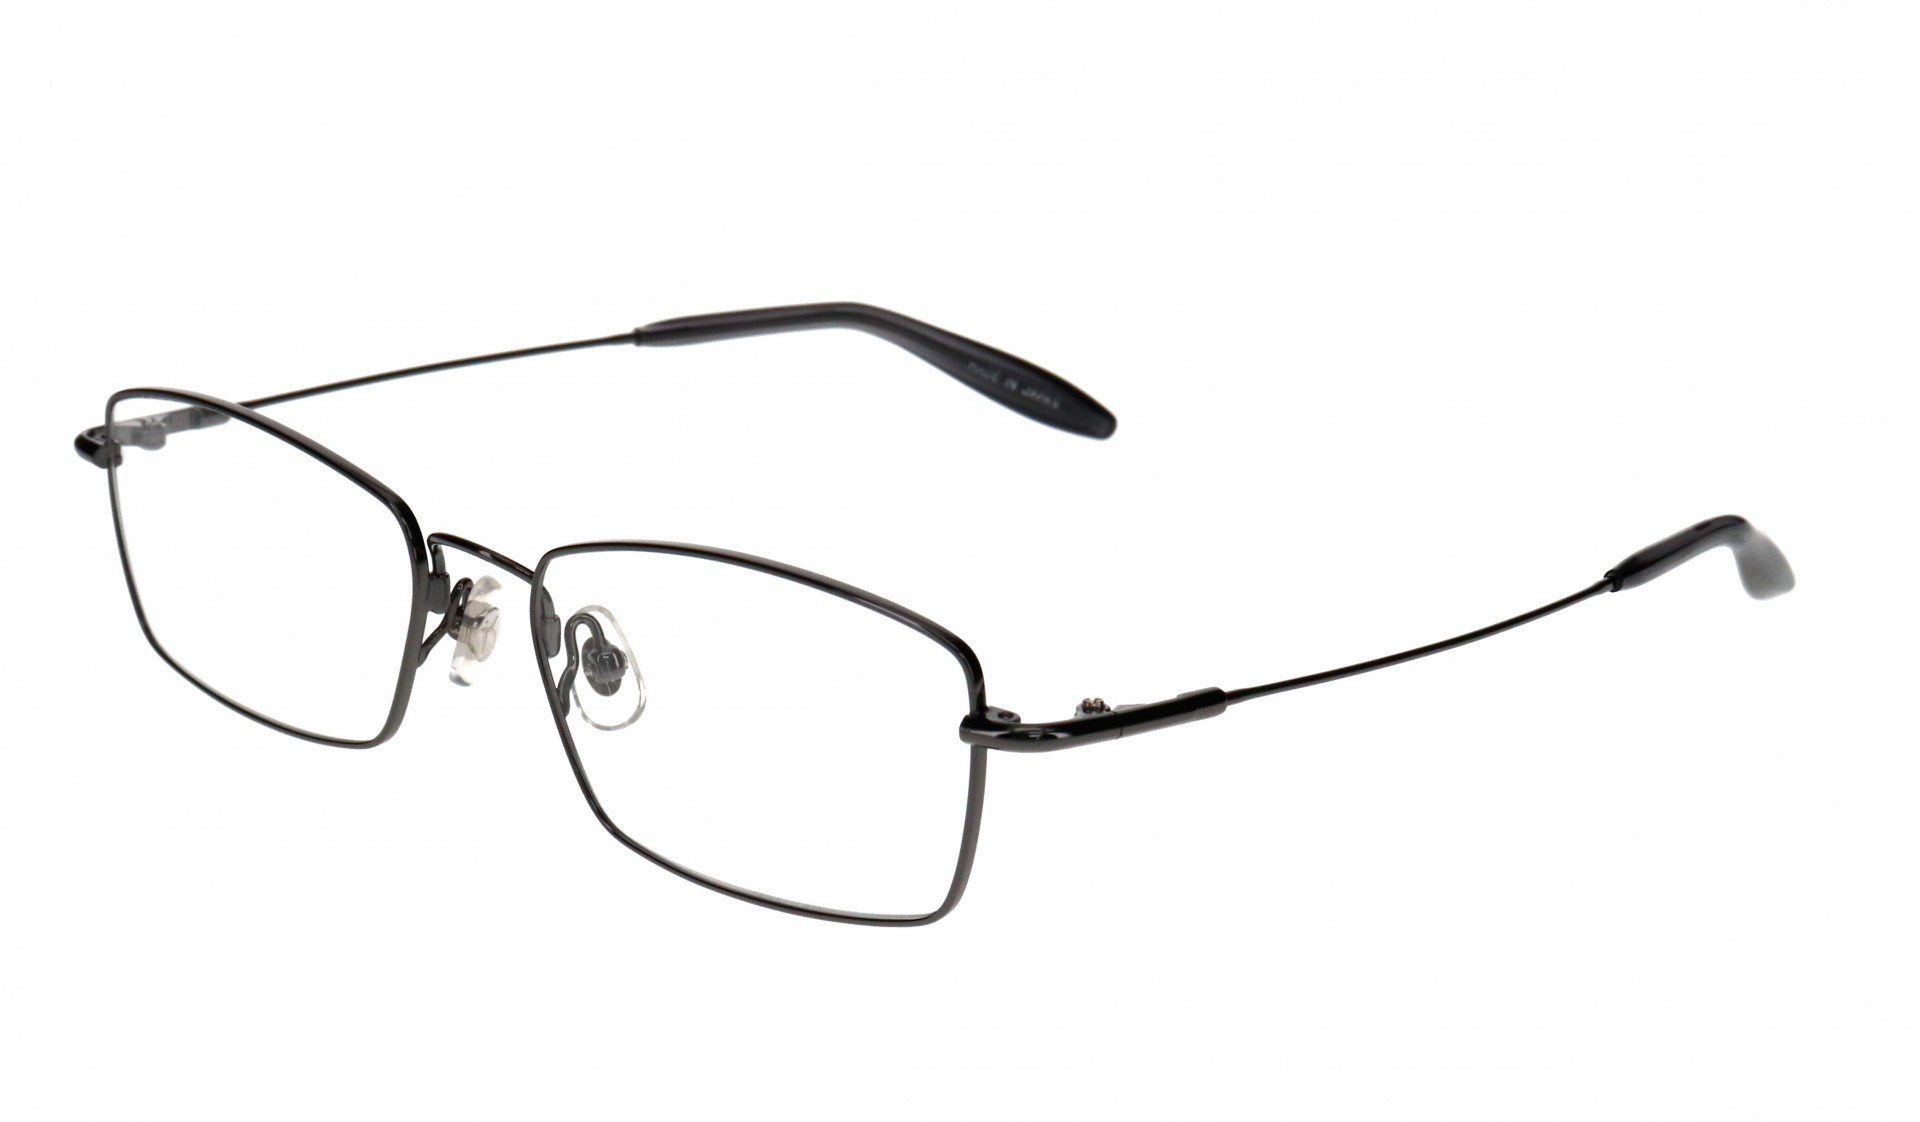 驚異の復元力 グニャッと曲げても元に戻るktaiflex ケータイフレックス から9月10日新型発売 眼鏡 めがね 修理 補聴器 サングラス コンタクトレンズ